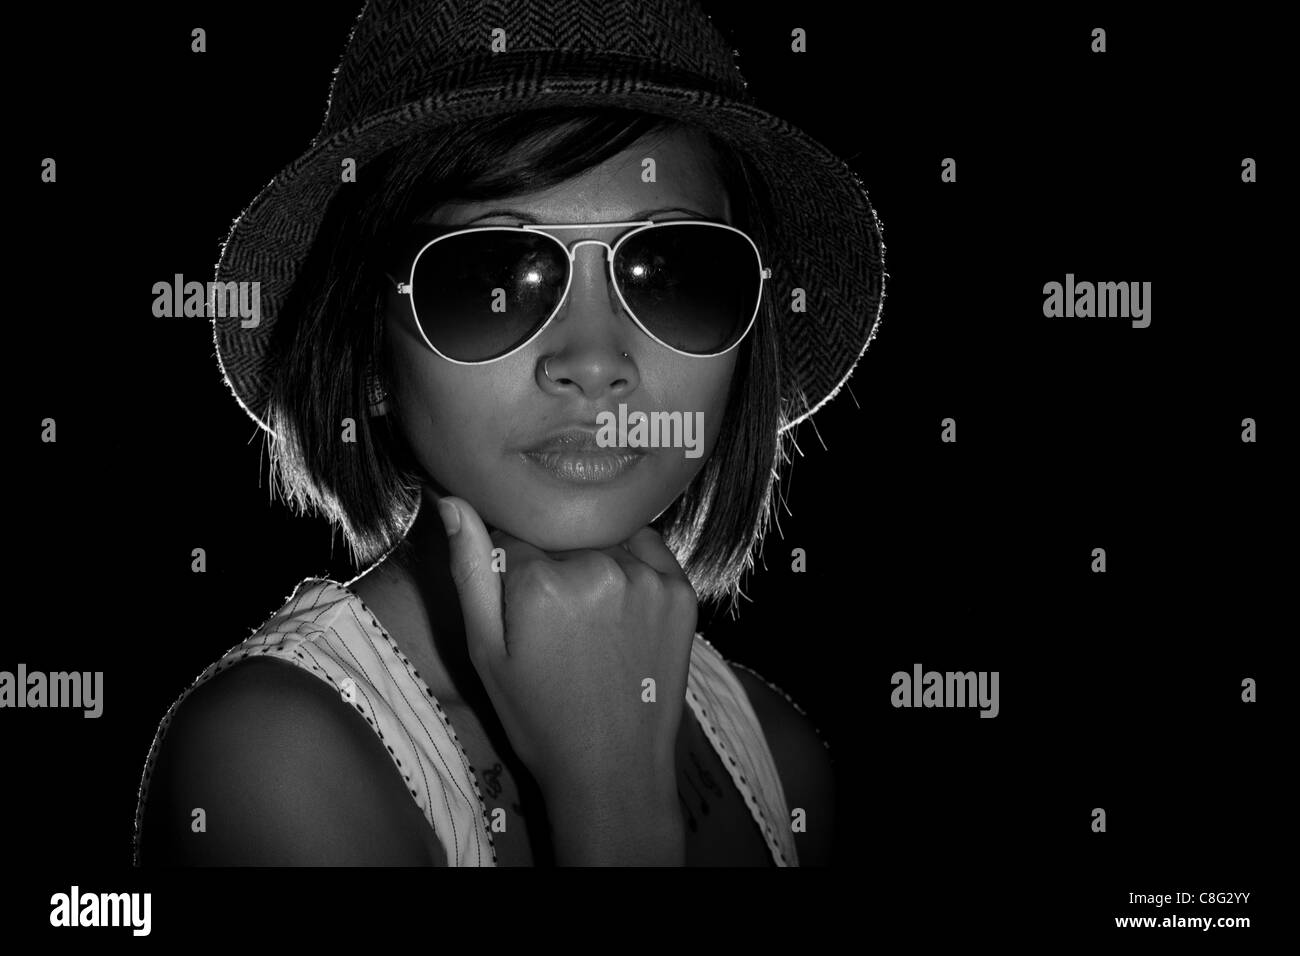 Una immagine in bianco e nero di un bellissimo modello indossando occhiali da sole e cappello. L'immagine è in bianco e nero. Foto Stock